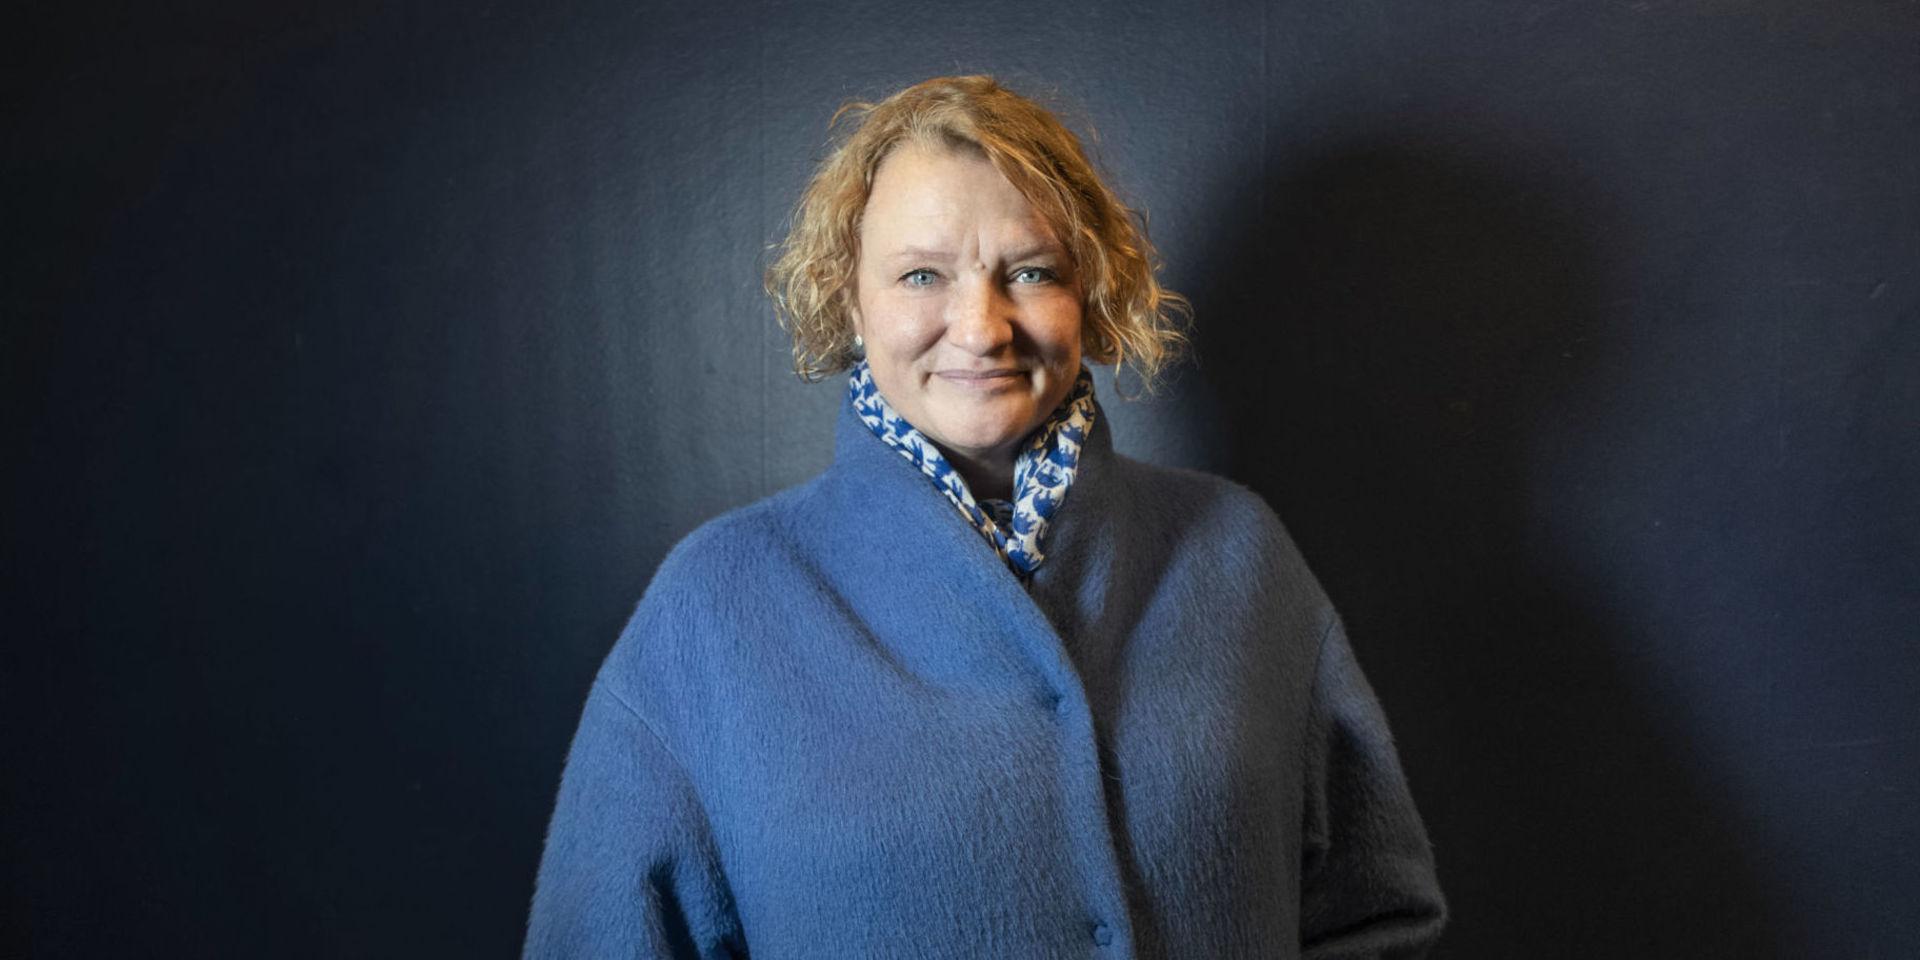 Anna Takanen drömde tidigt om att bli skådespelare. I dag är hon chef över Sveriges största teaterinstitution, Kulturhuset Stadsteatern i Stockholm. Nu fyller hon 50 år.